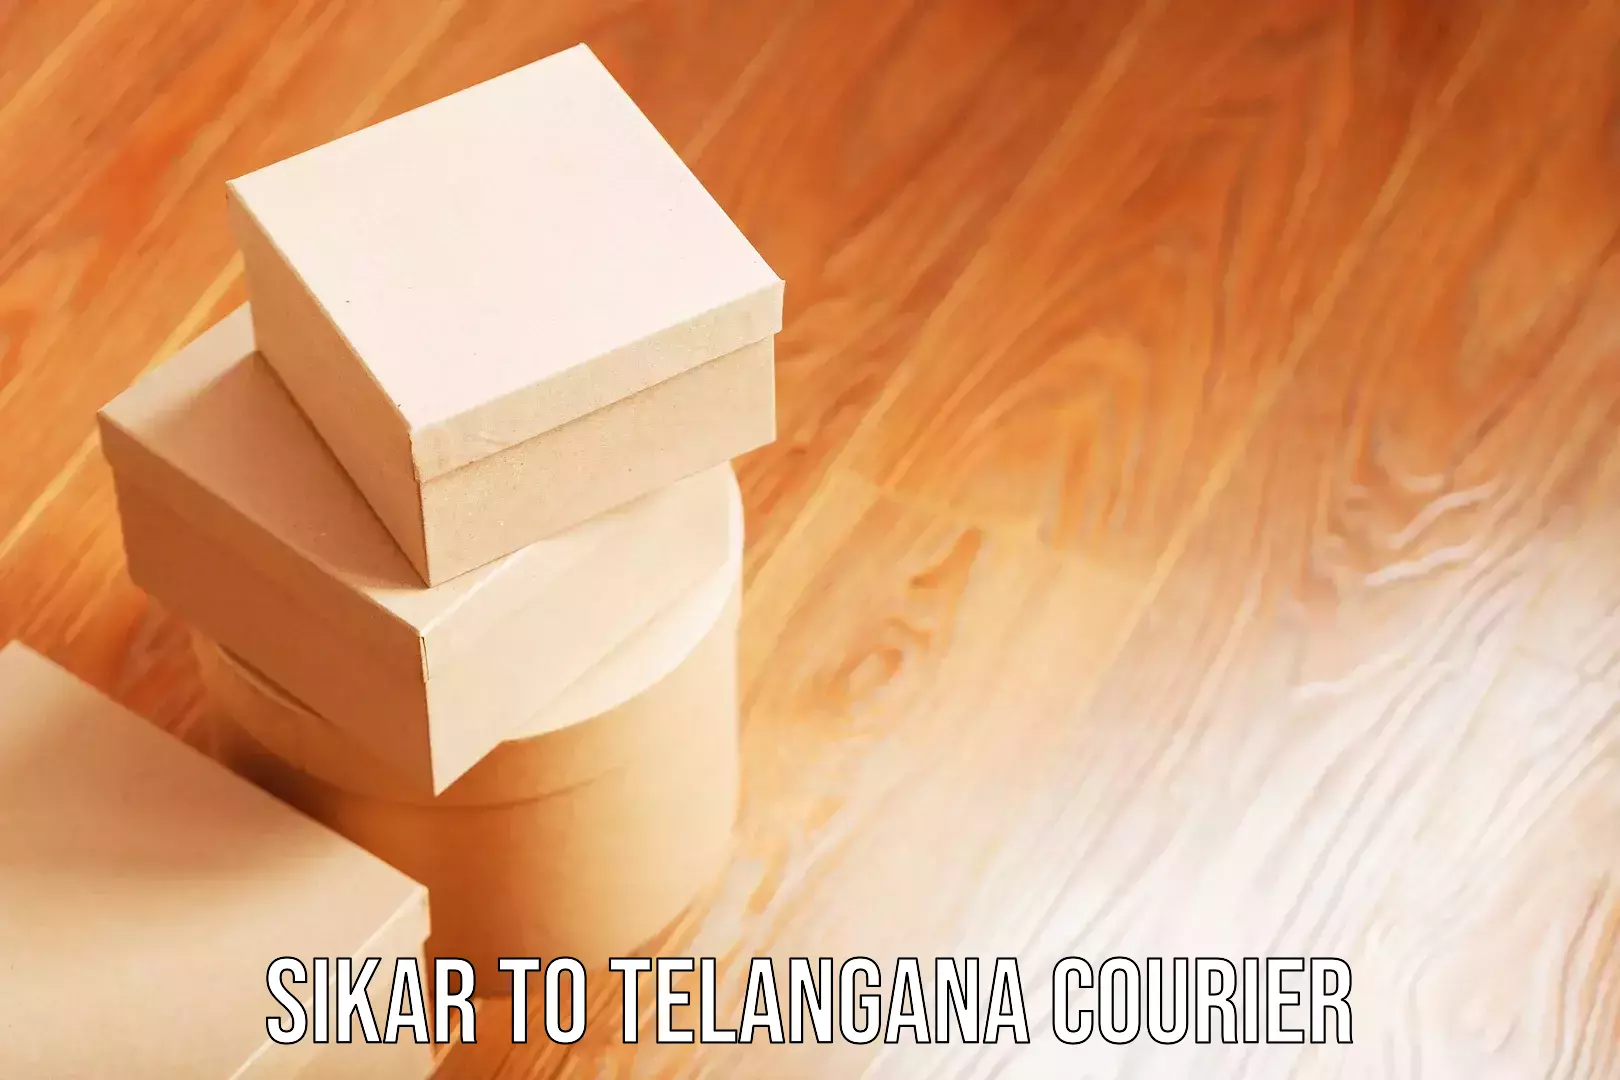 Door-to-door baggage service Sikar to Telangana